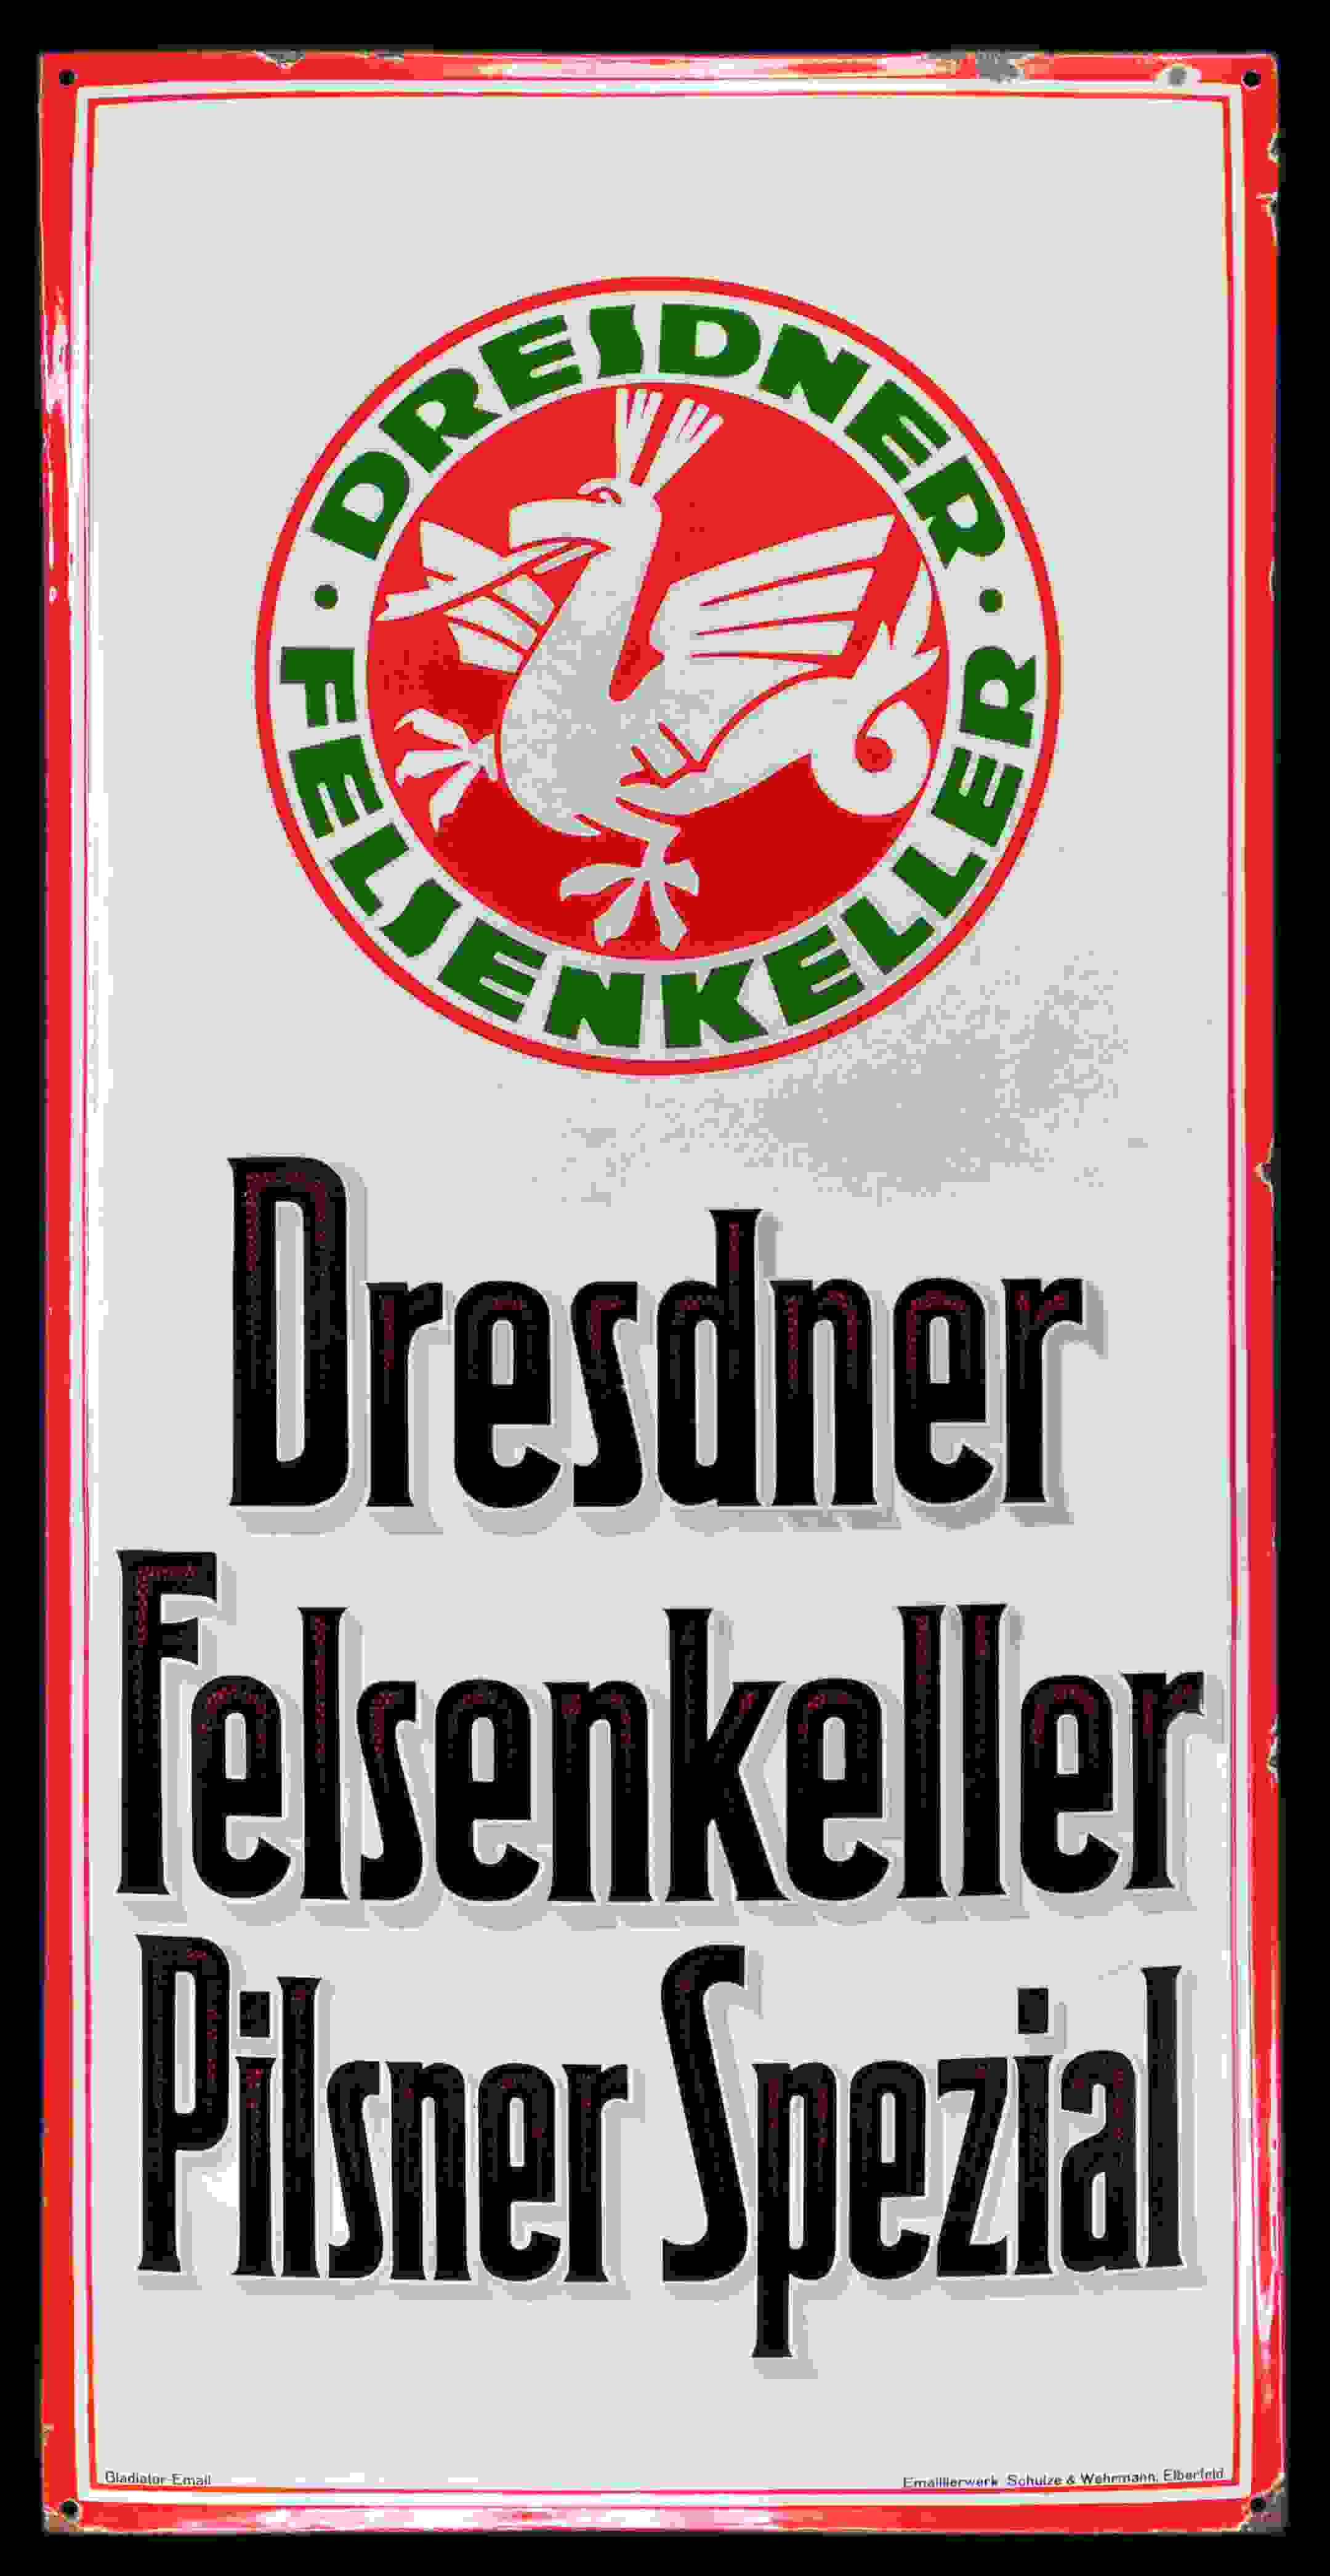 Dresdner Felsenkeller Pilsner Spezial 